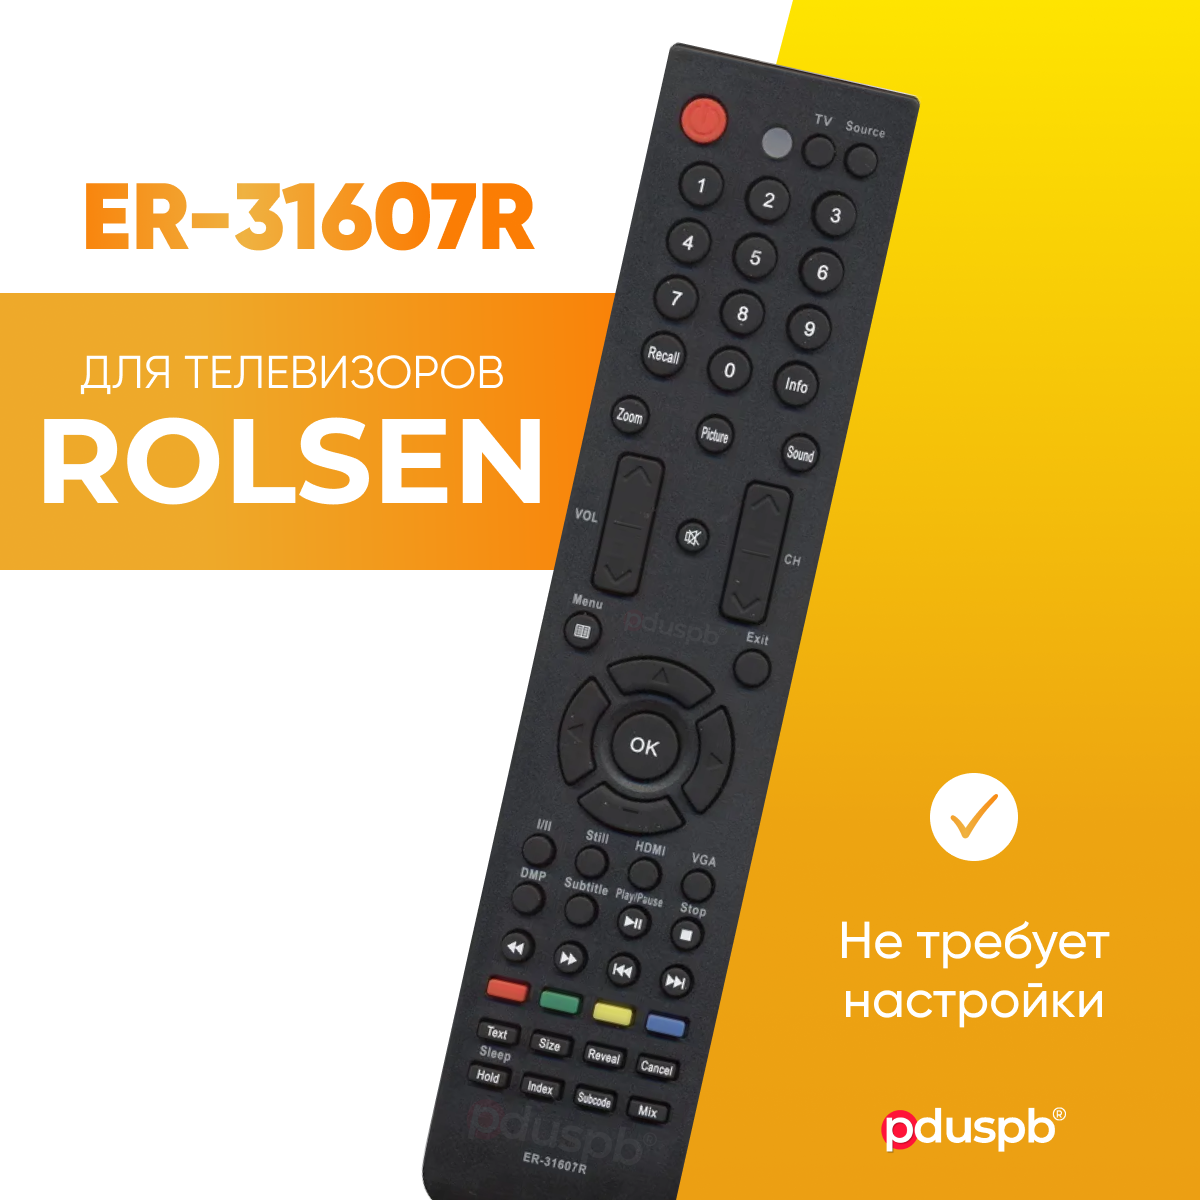 Пульт ду для телевизоров Rolsen ER-31607R